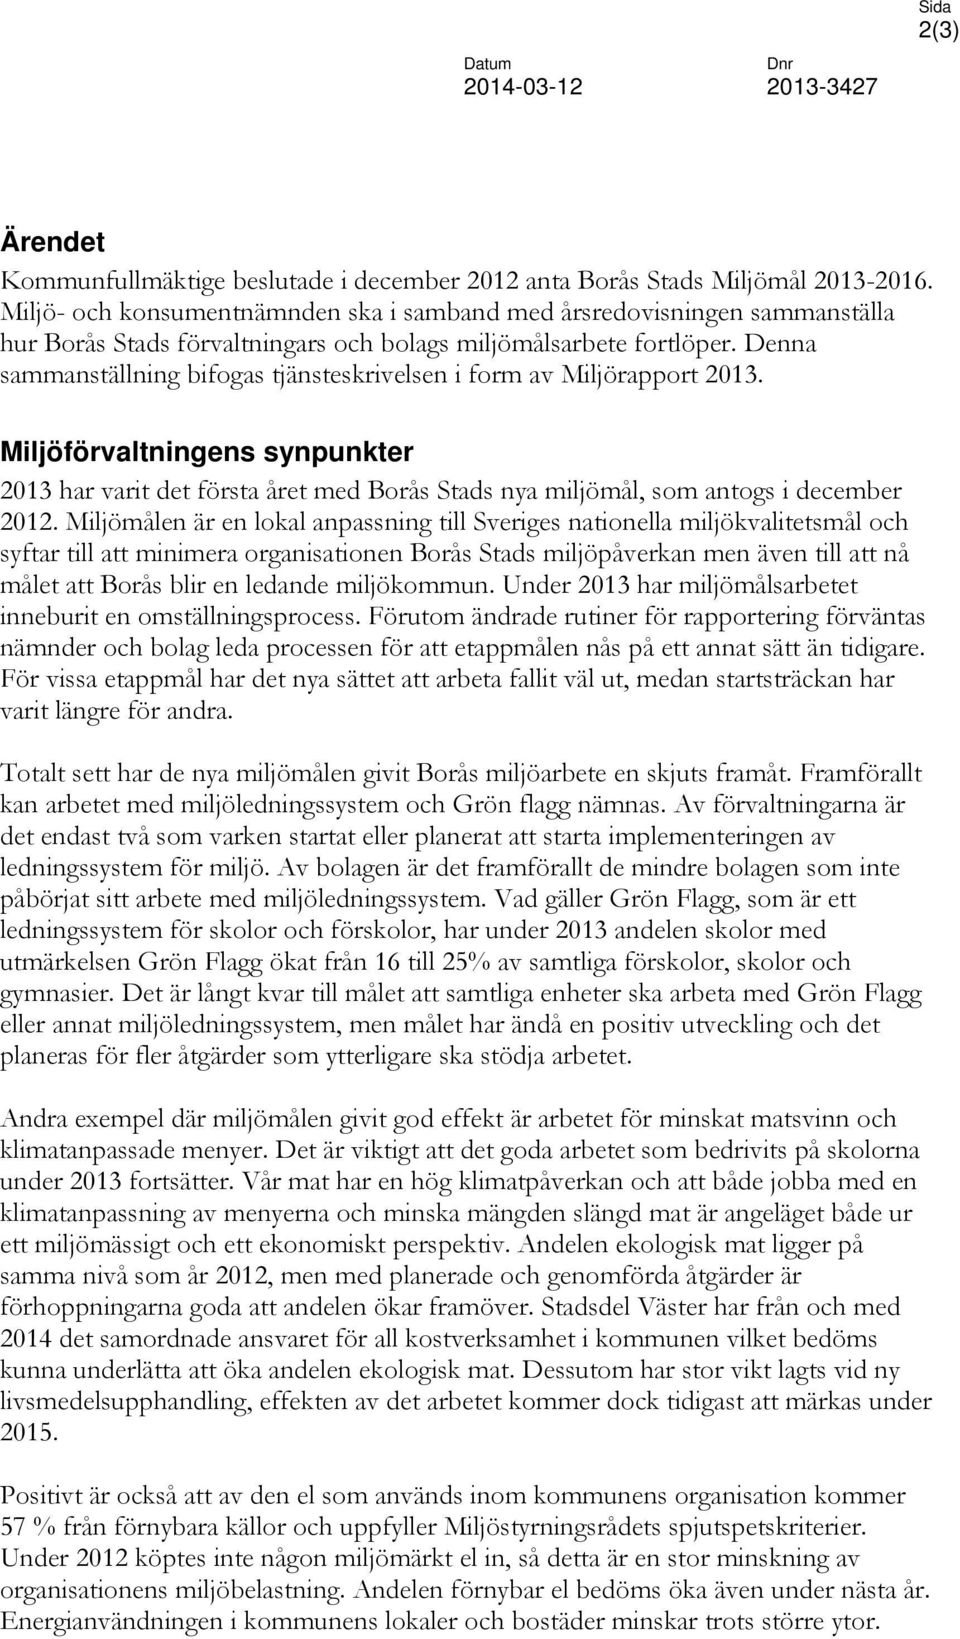 Denna sammanställning bifogas tjänsteskrivelsen i form av Miljörapport 2013. Miljöförvaltningens synpunkter 2013 har varit det första året med Borås Stads nya miljömål, som antogs i december 2012.